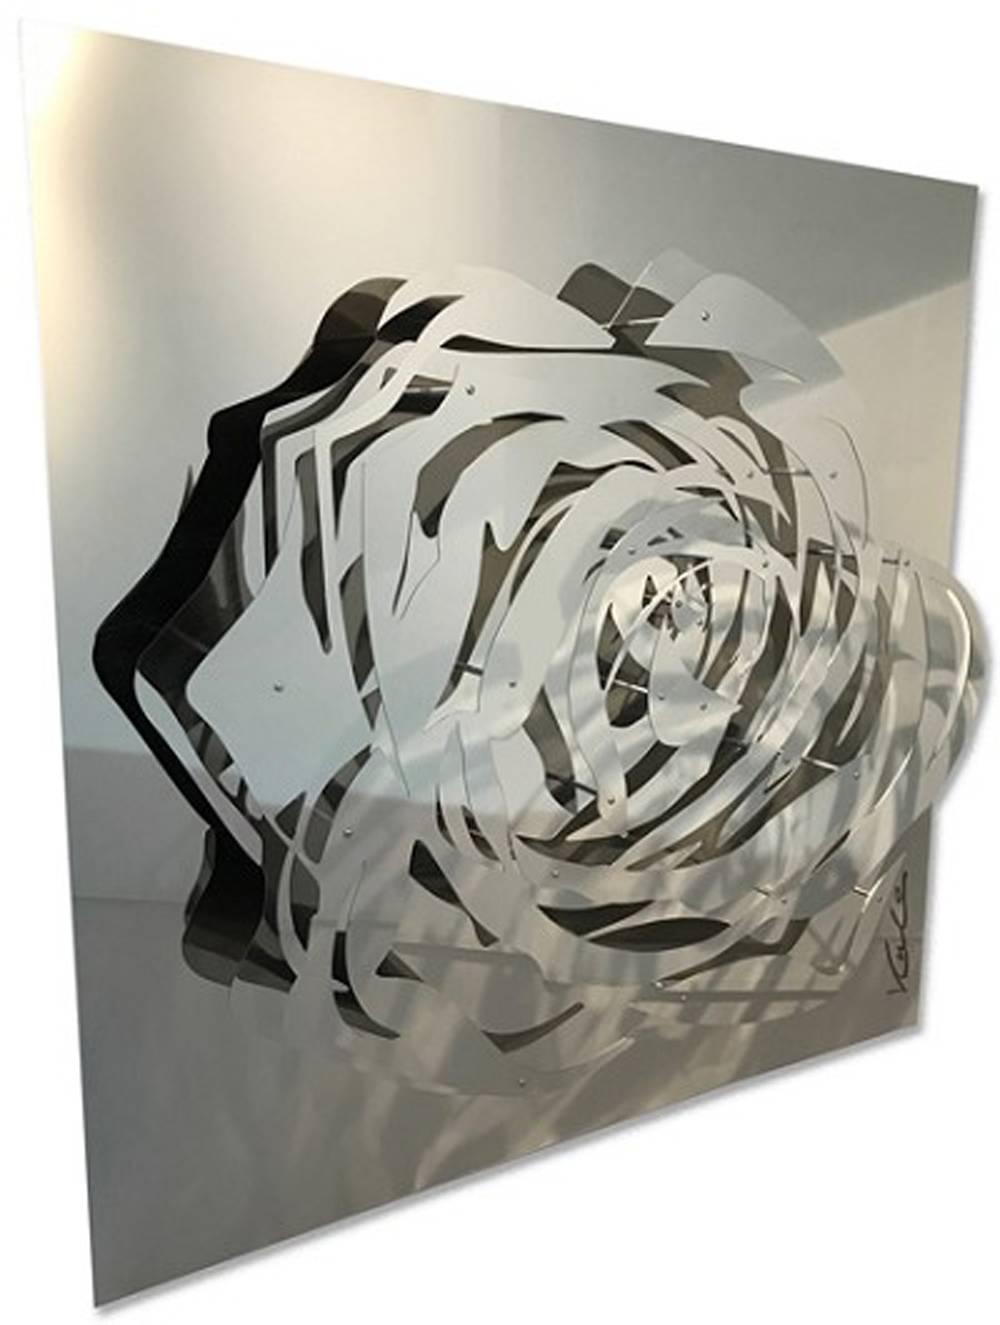 Grande rose - Miroir en acier inoxydable - Sculpture de Michael Kalish